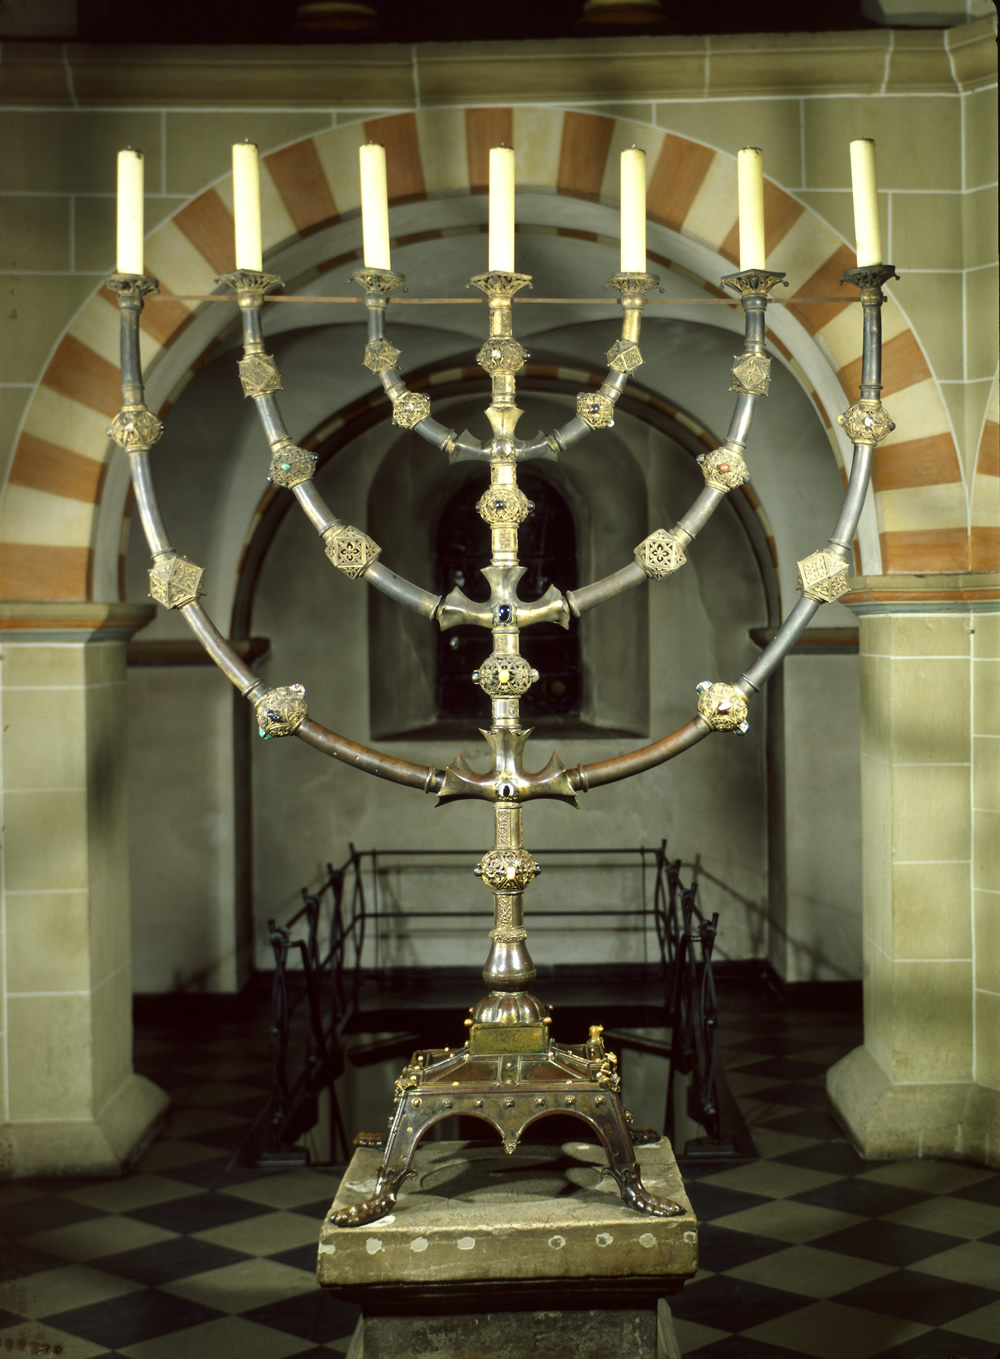 Der siebenarmige Essener Leuchter, entstanden um das Jahr 1000, ist aus Bronze gegossen. Er ist die älteste erhaltene, christliche Nachbildung des jüdischen Tempelleuchters. (Quelle: © Domschatzkammer, Essen)